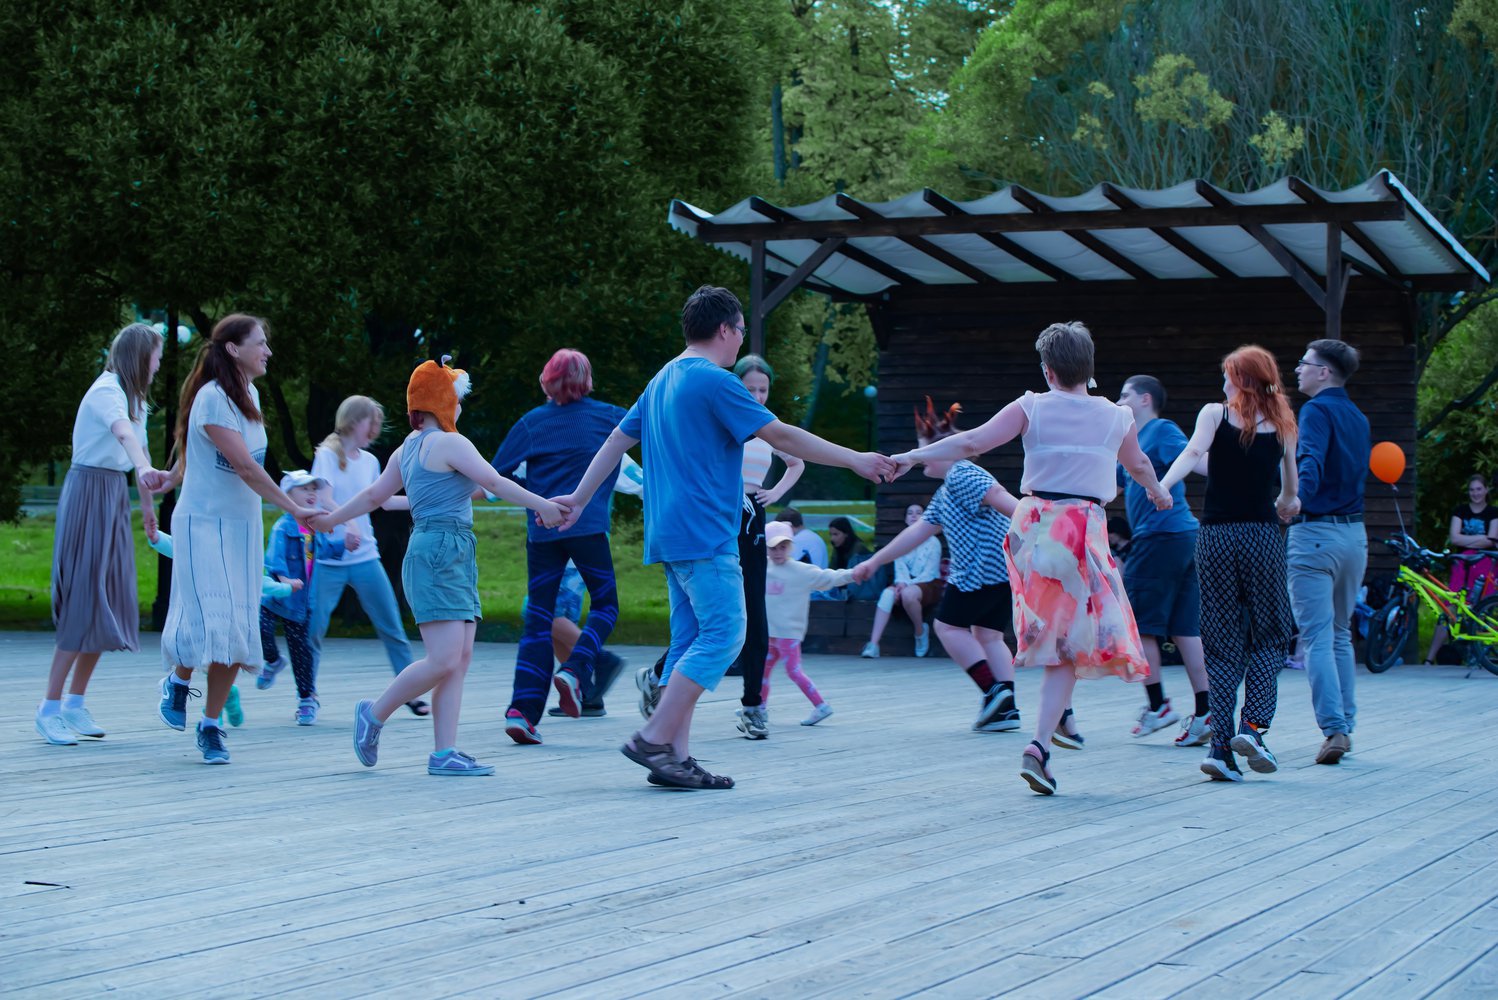 23 июля в рамках 1120-летнего празднования Дня города Пскова приглашаем молодёжь на открытый вечер танцев «Чай, кофе, потанцуем!».